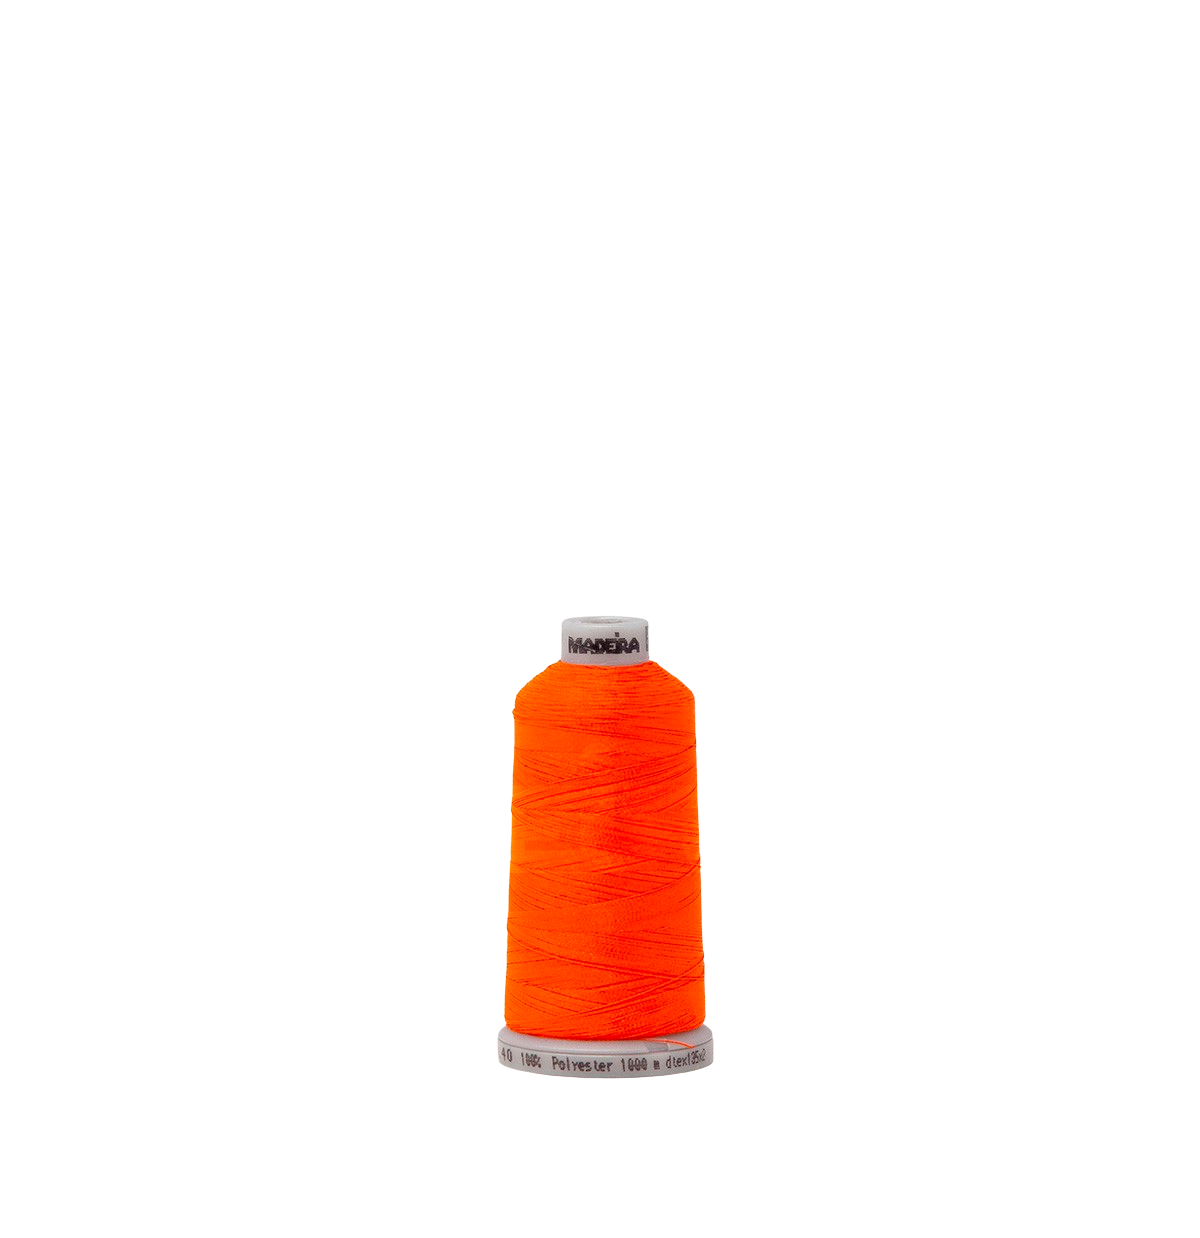 Fluorescent Red Orange 1837 #40 Weight Madeira Polyneon Thread